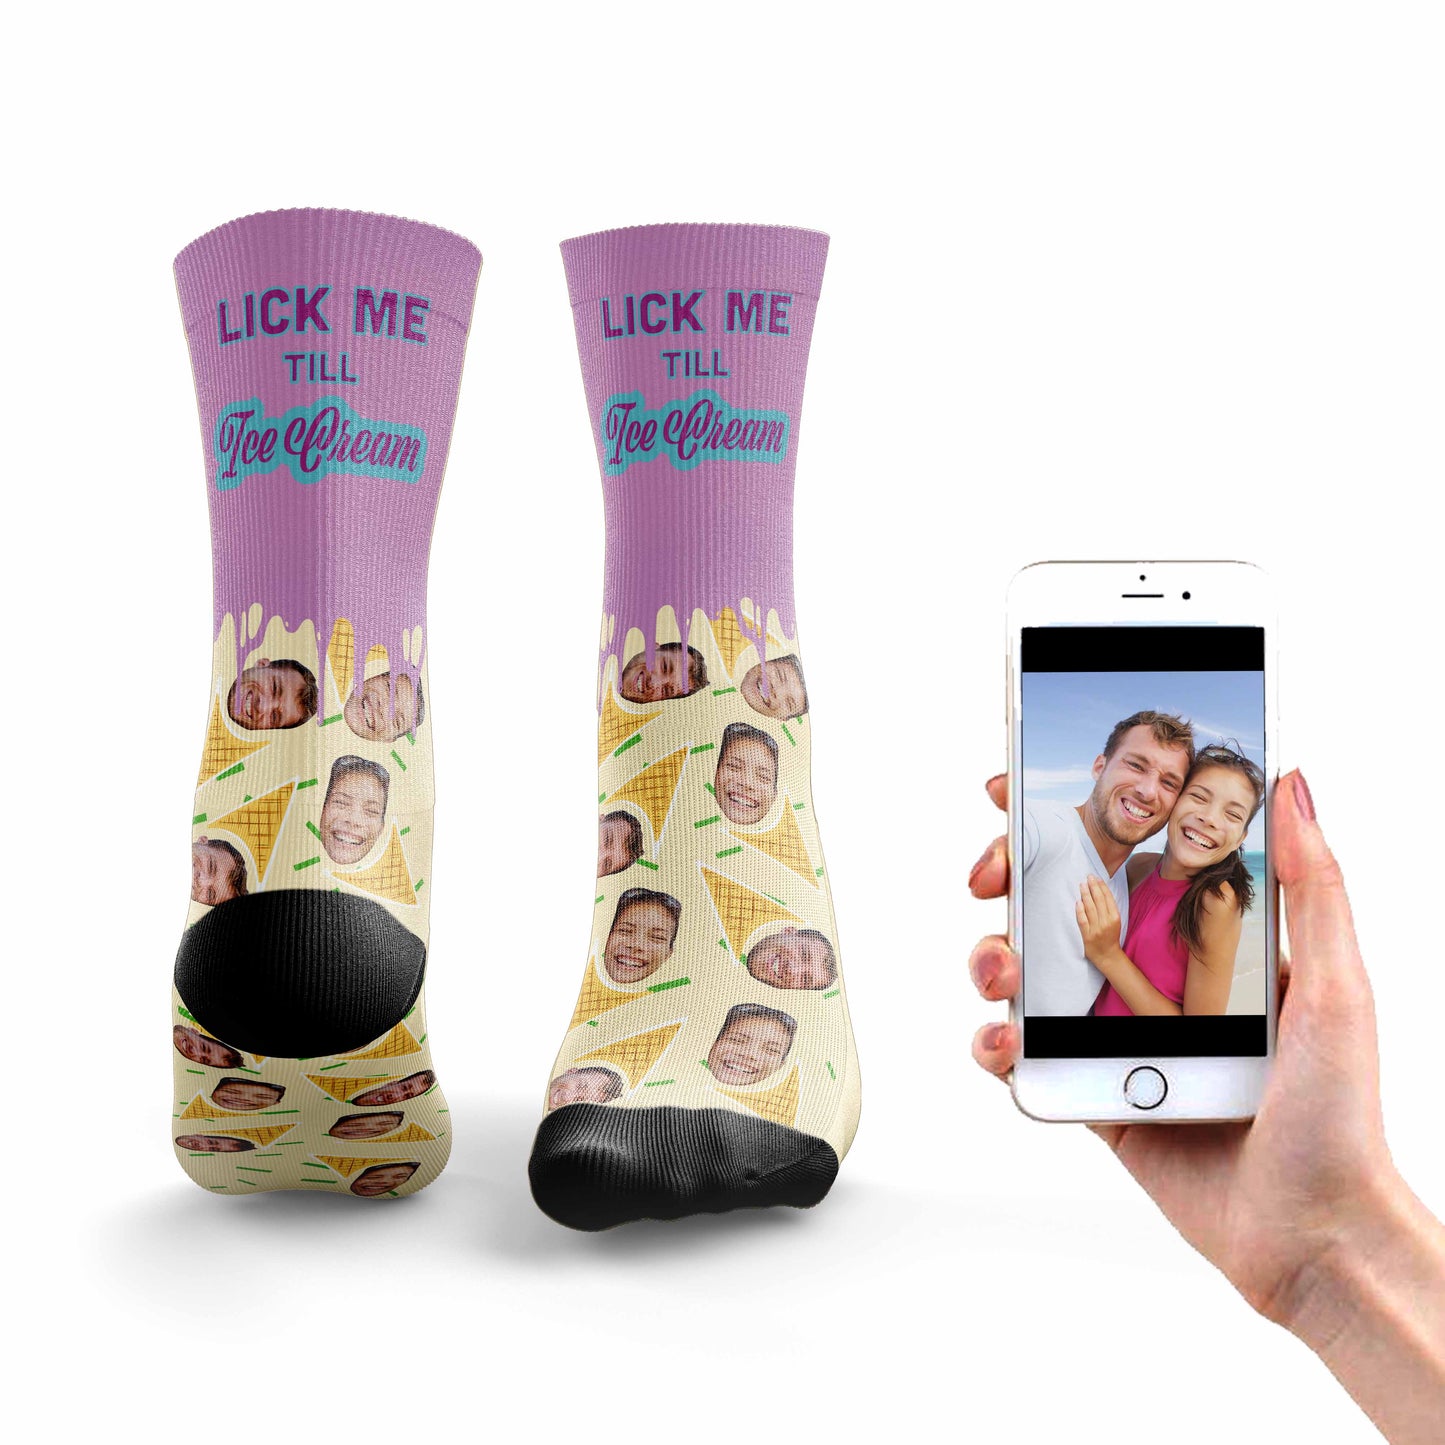 
                  
                    Lick Me Till Ice Cream Socks
                  
                